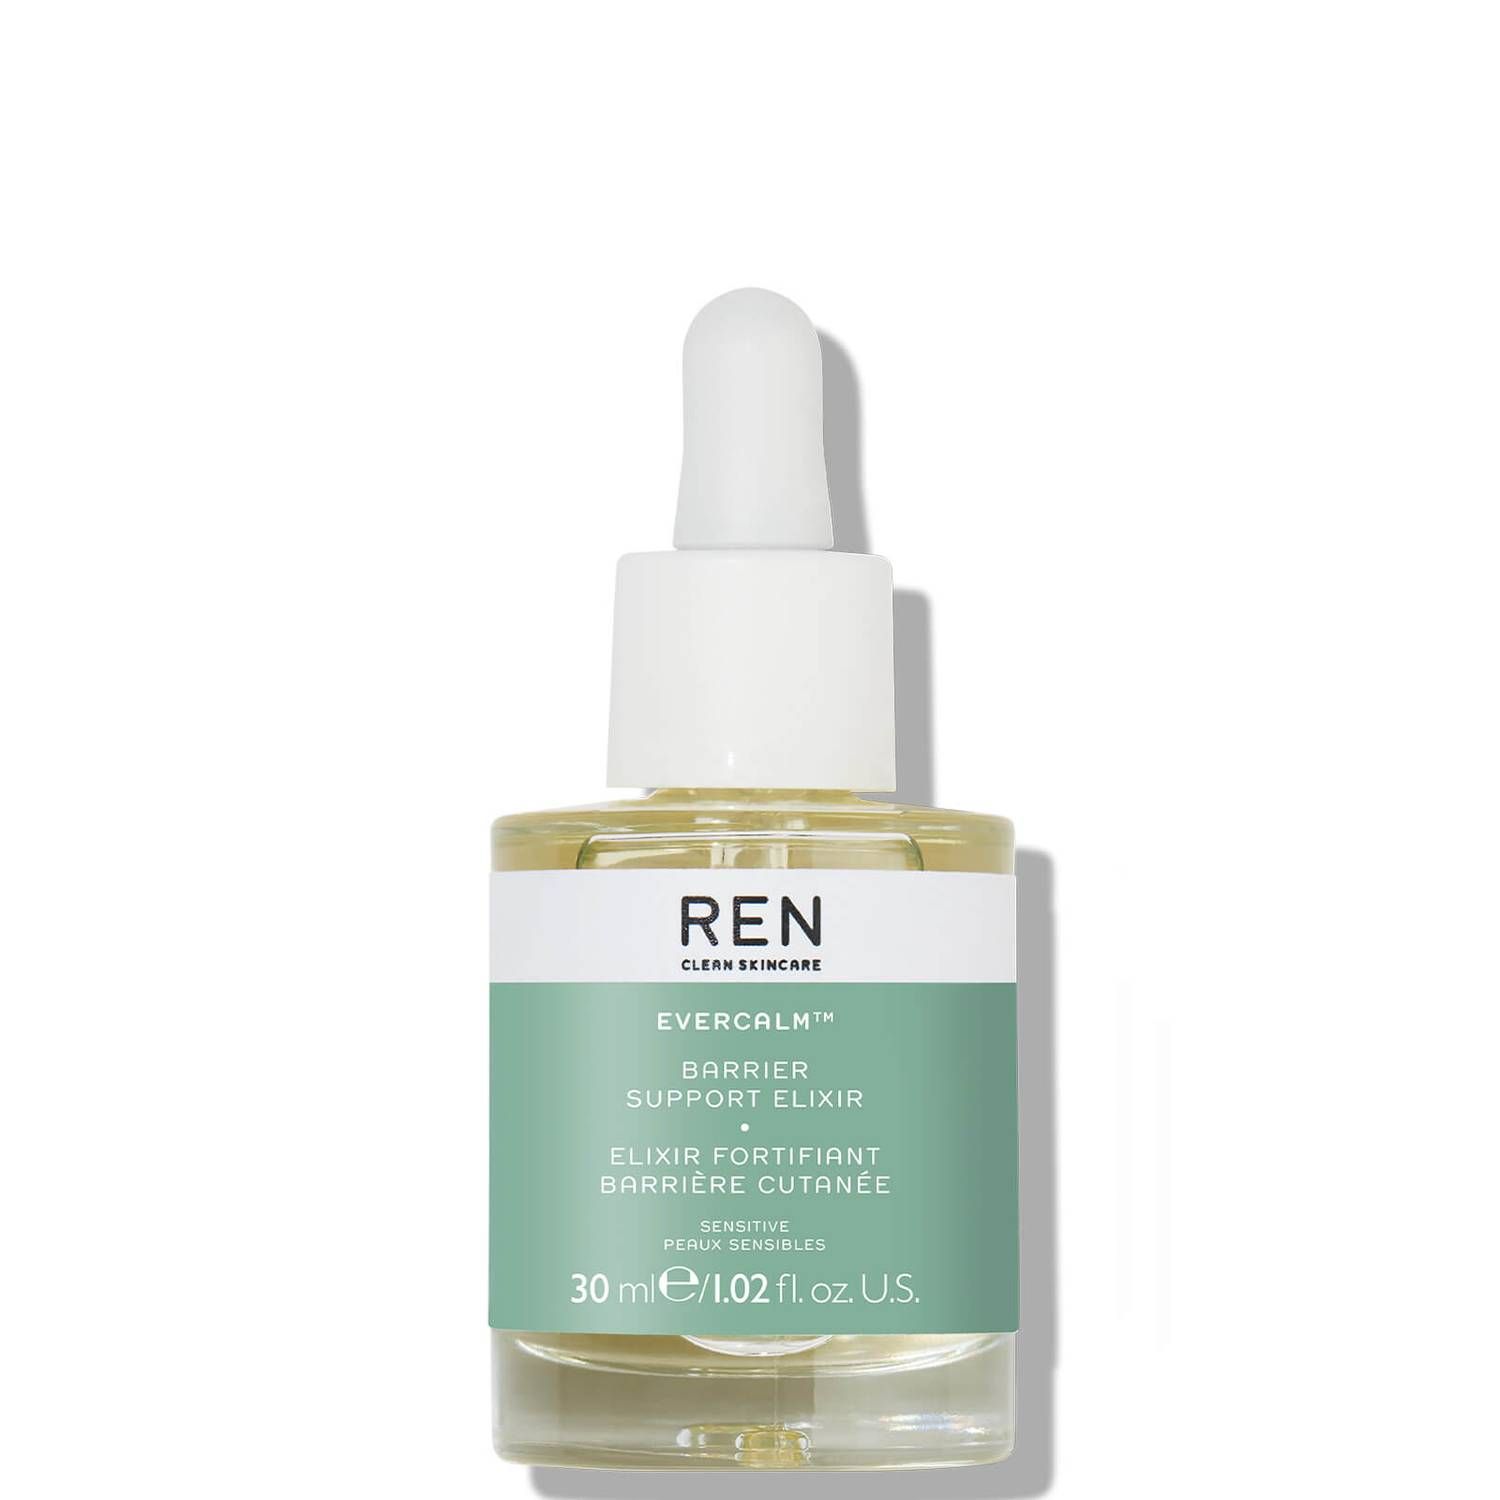 REN Clean Skincare Evercalm Barrier Support Elixir 30ml | Cult Beauty